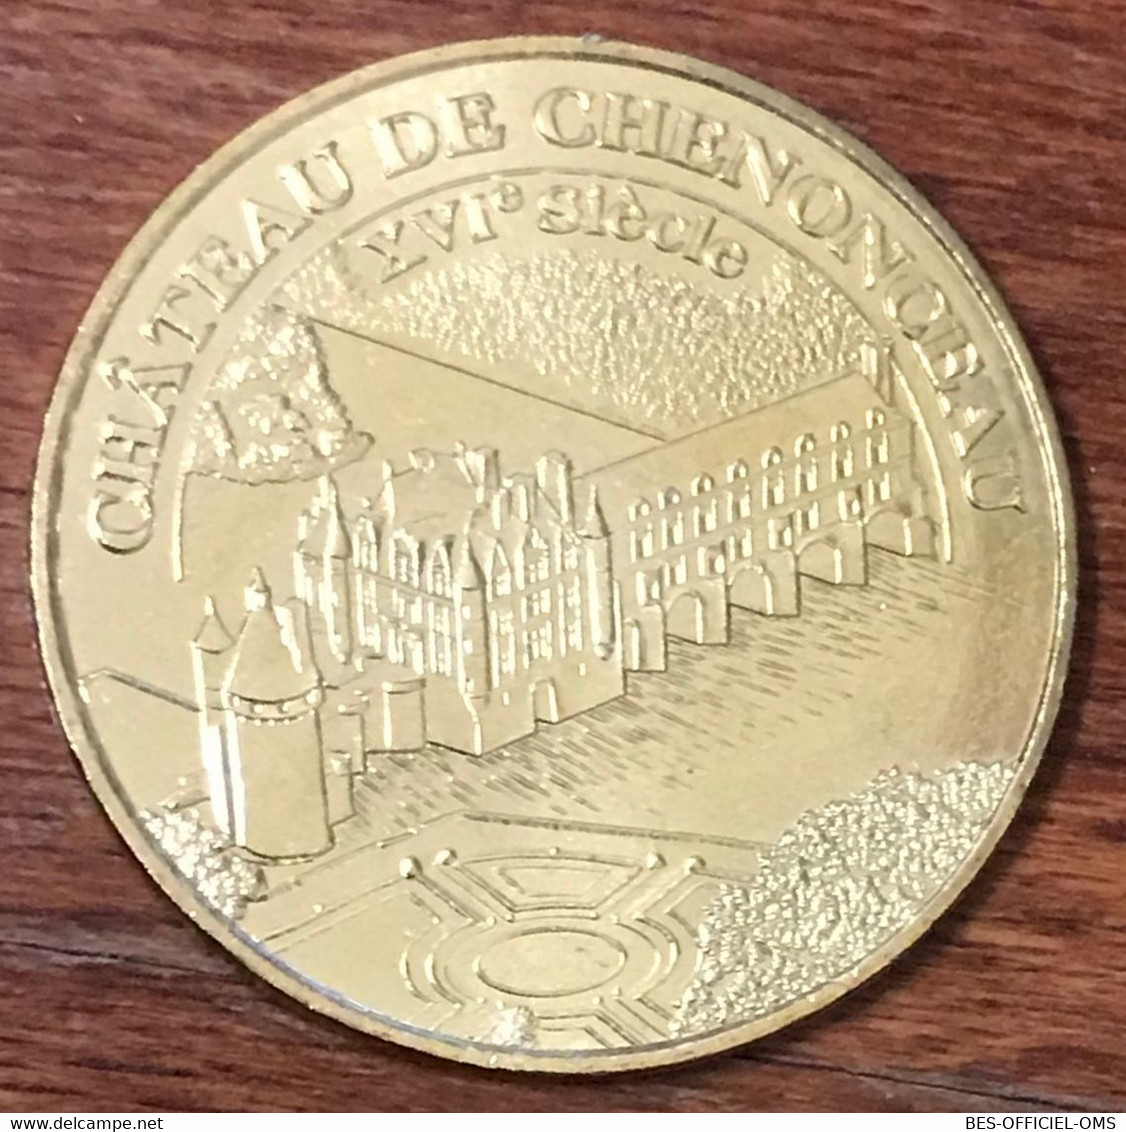 37 CHÂTEAU DE CHENONCEAU XVIe SIÈCLE MDP 2018 MEDAILLE SOUVENIR MONNAIE DE PARIS JETON TOURISTIQUE MEDALS COINS TOKENS - 2018